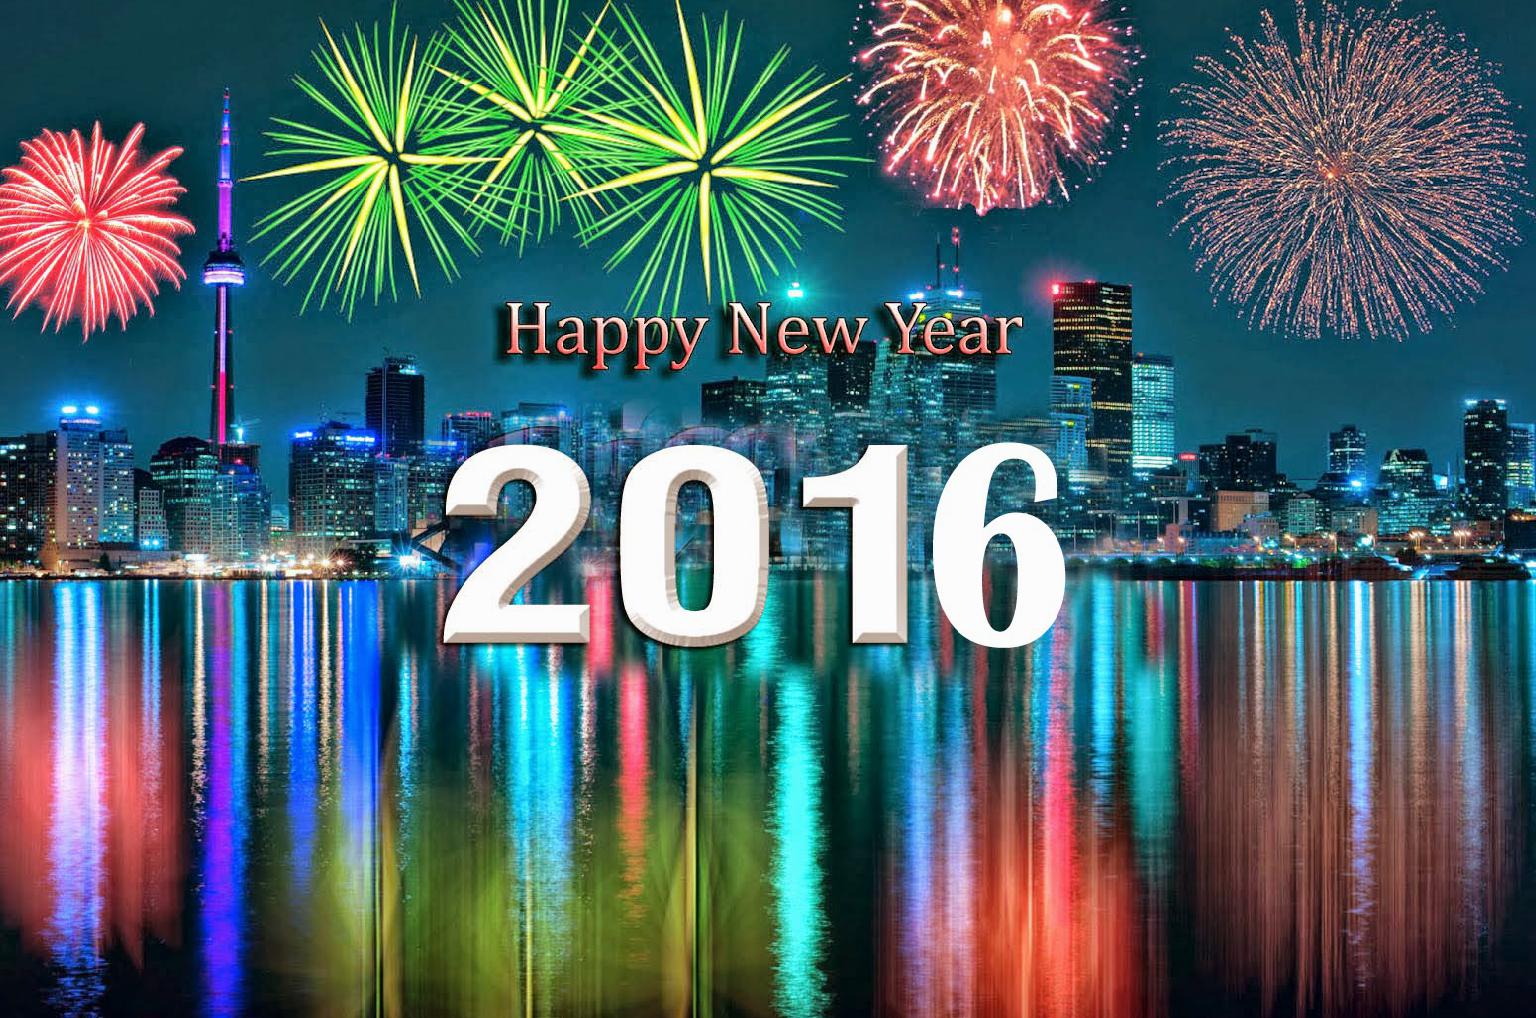 Gambar Dp Bbm Happy New Year 2016 Update Status